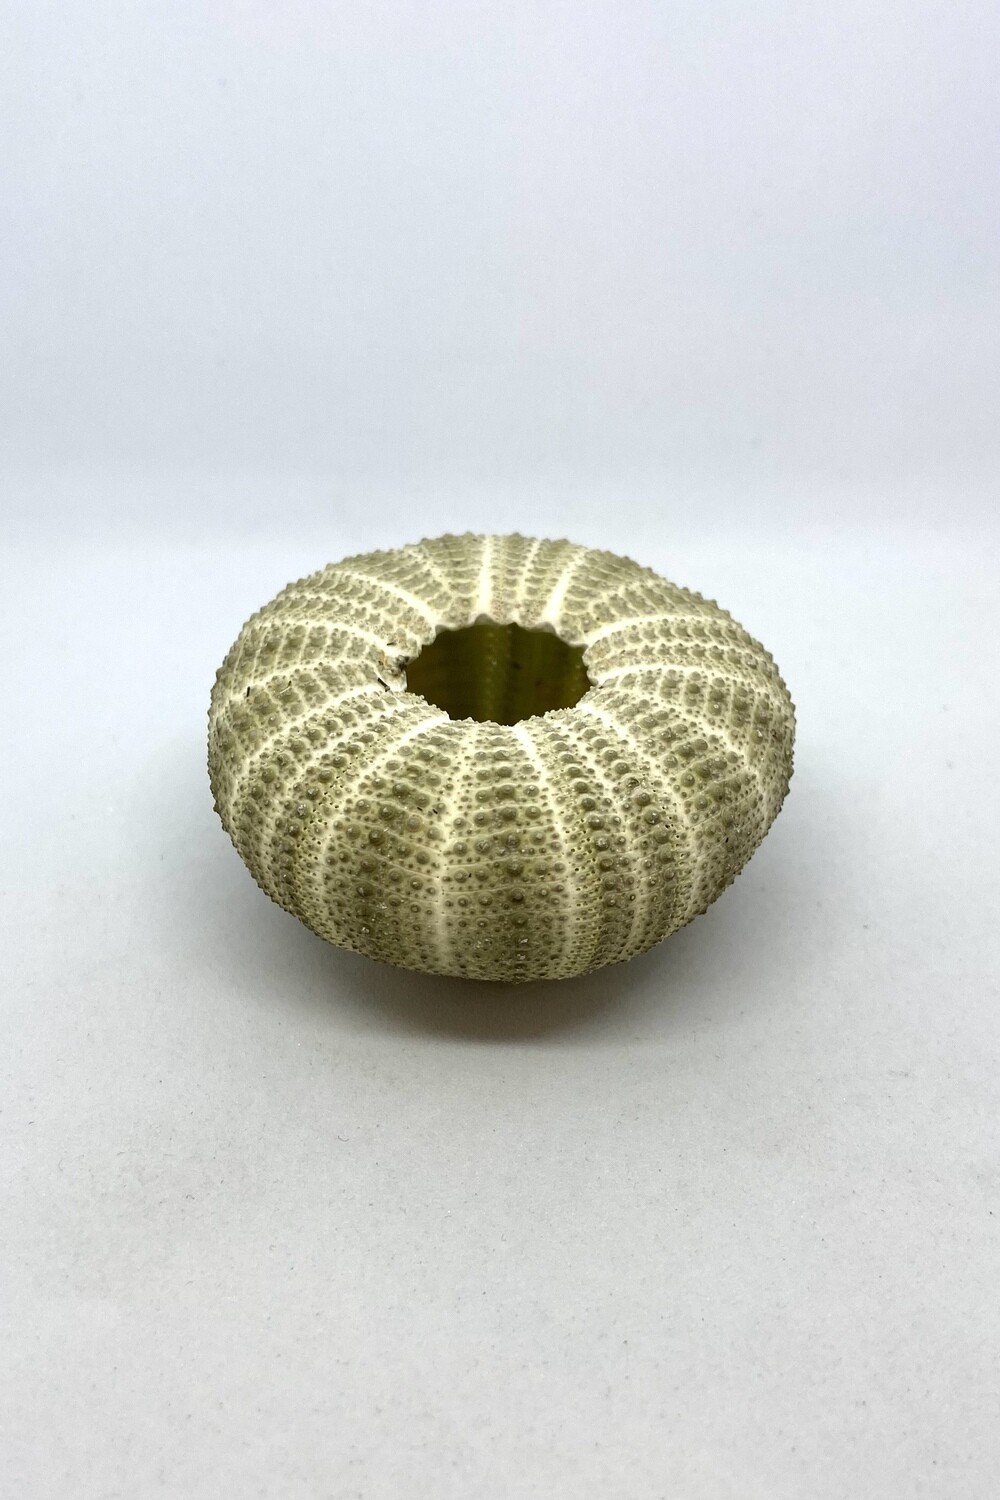 Sea Urchin Shell 2”